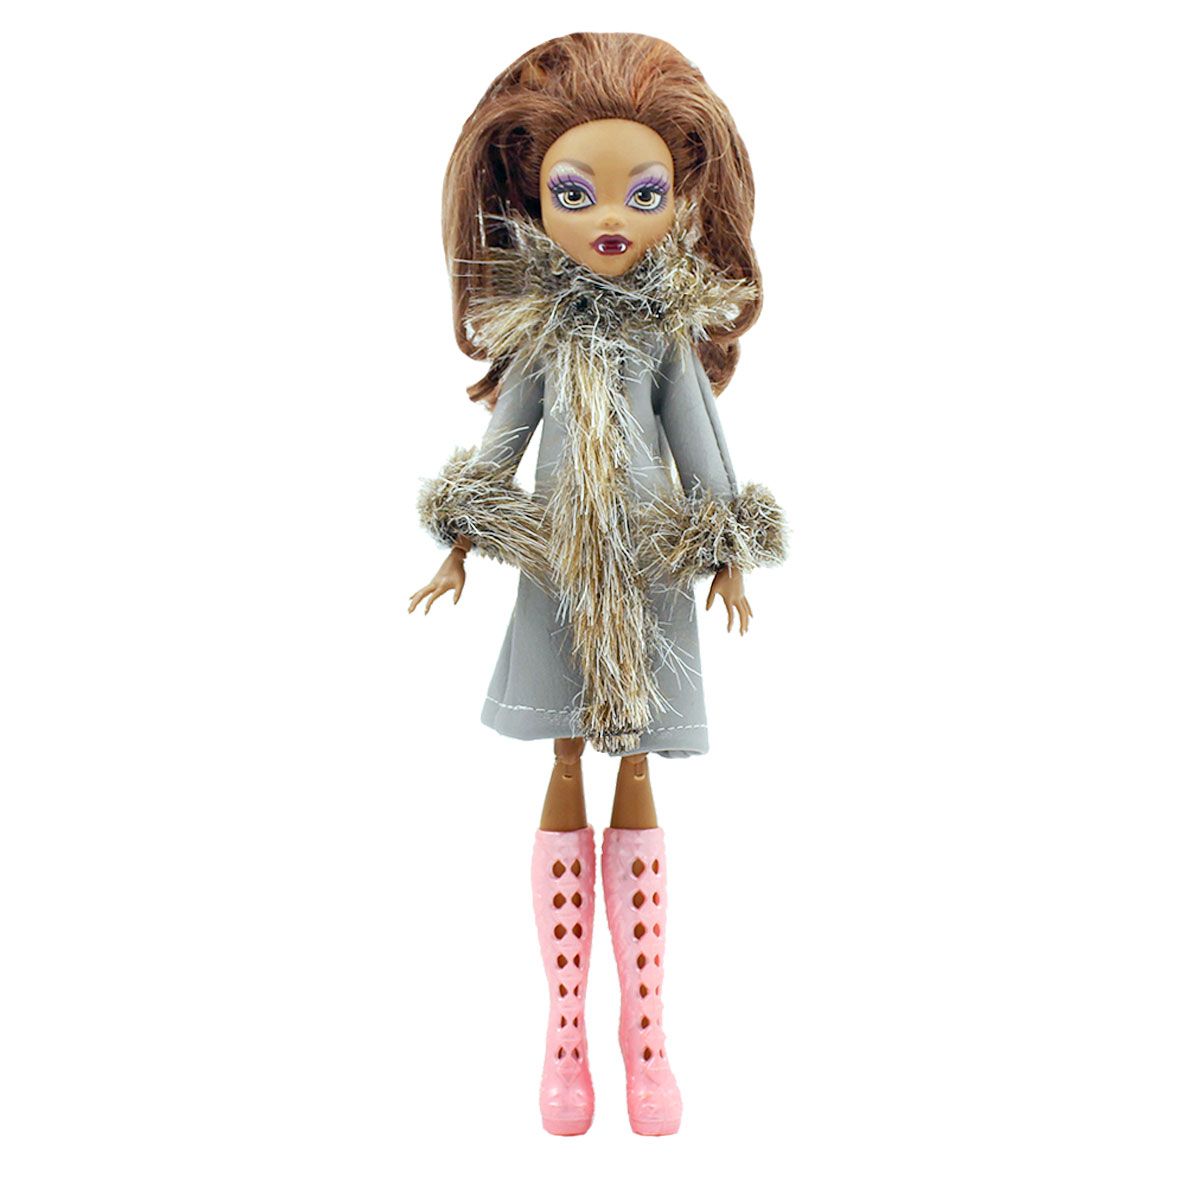 Одежда Dolls Accessories для Монстер Хай и кукол 26-28 см Иней